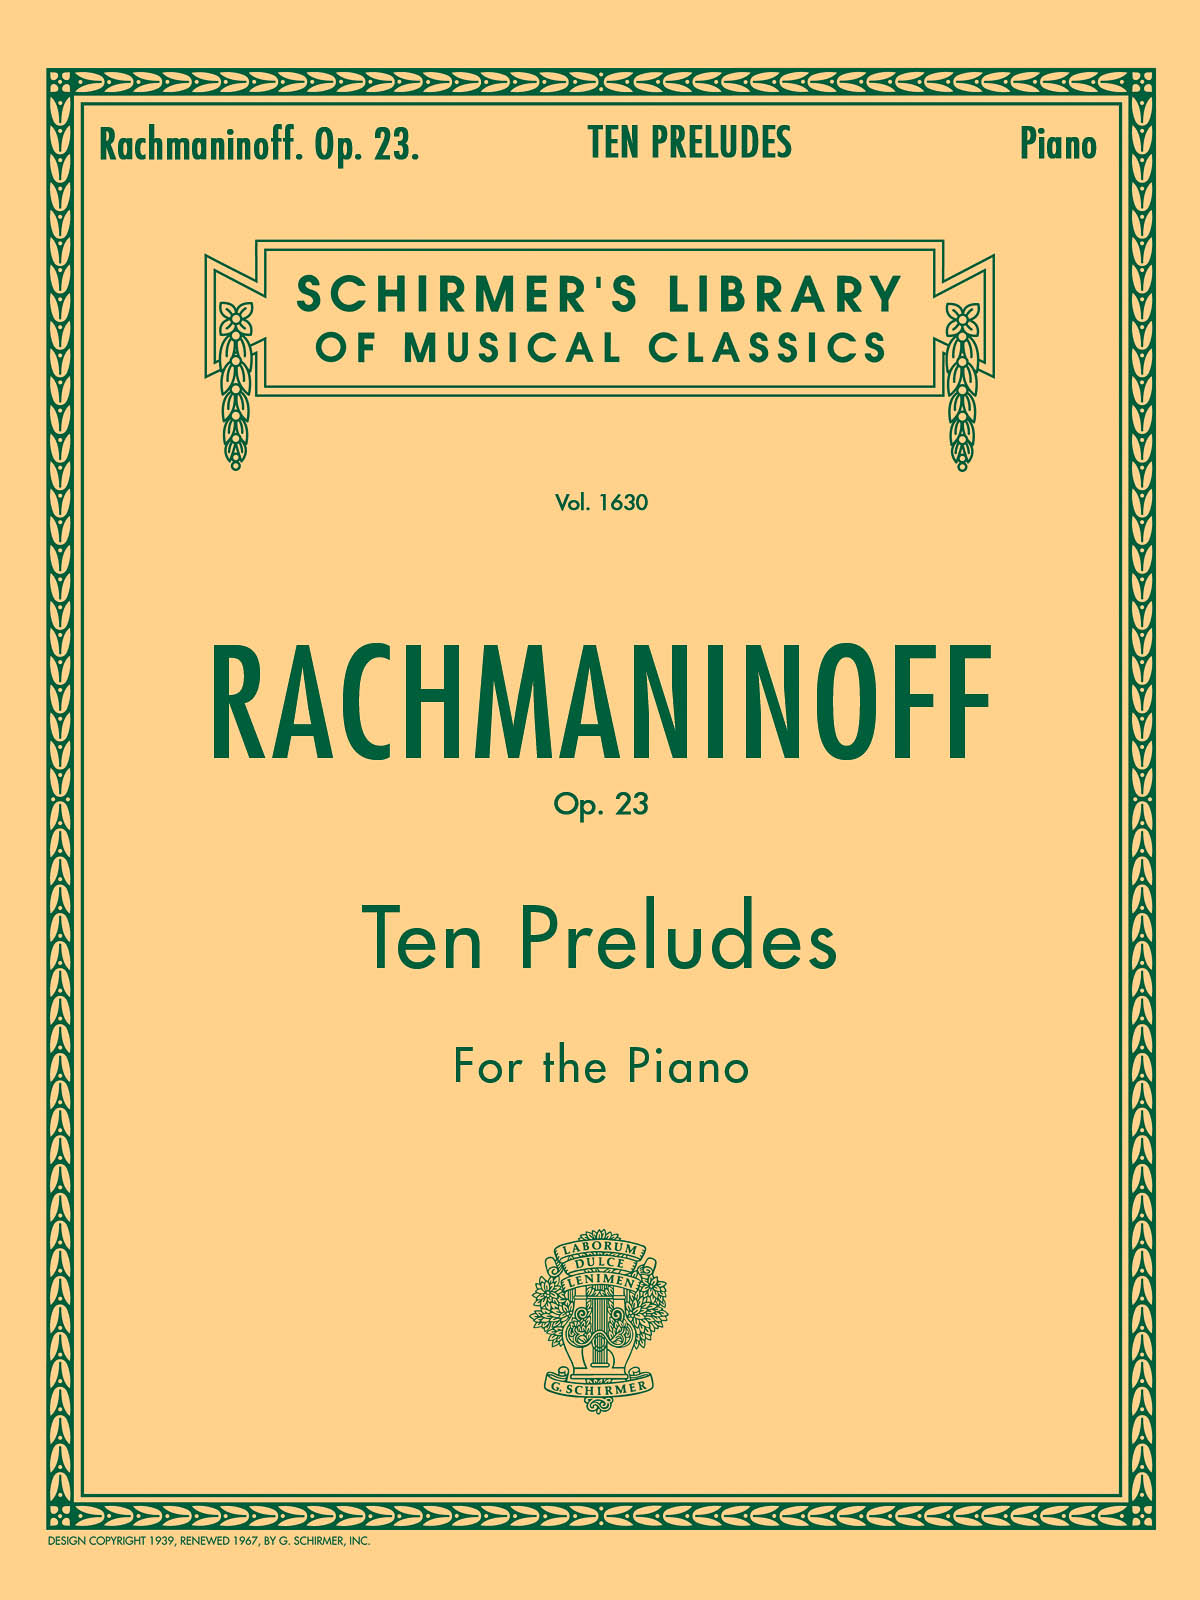 Rachmaninov: Ten Preludes for Piano Op.23